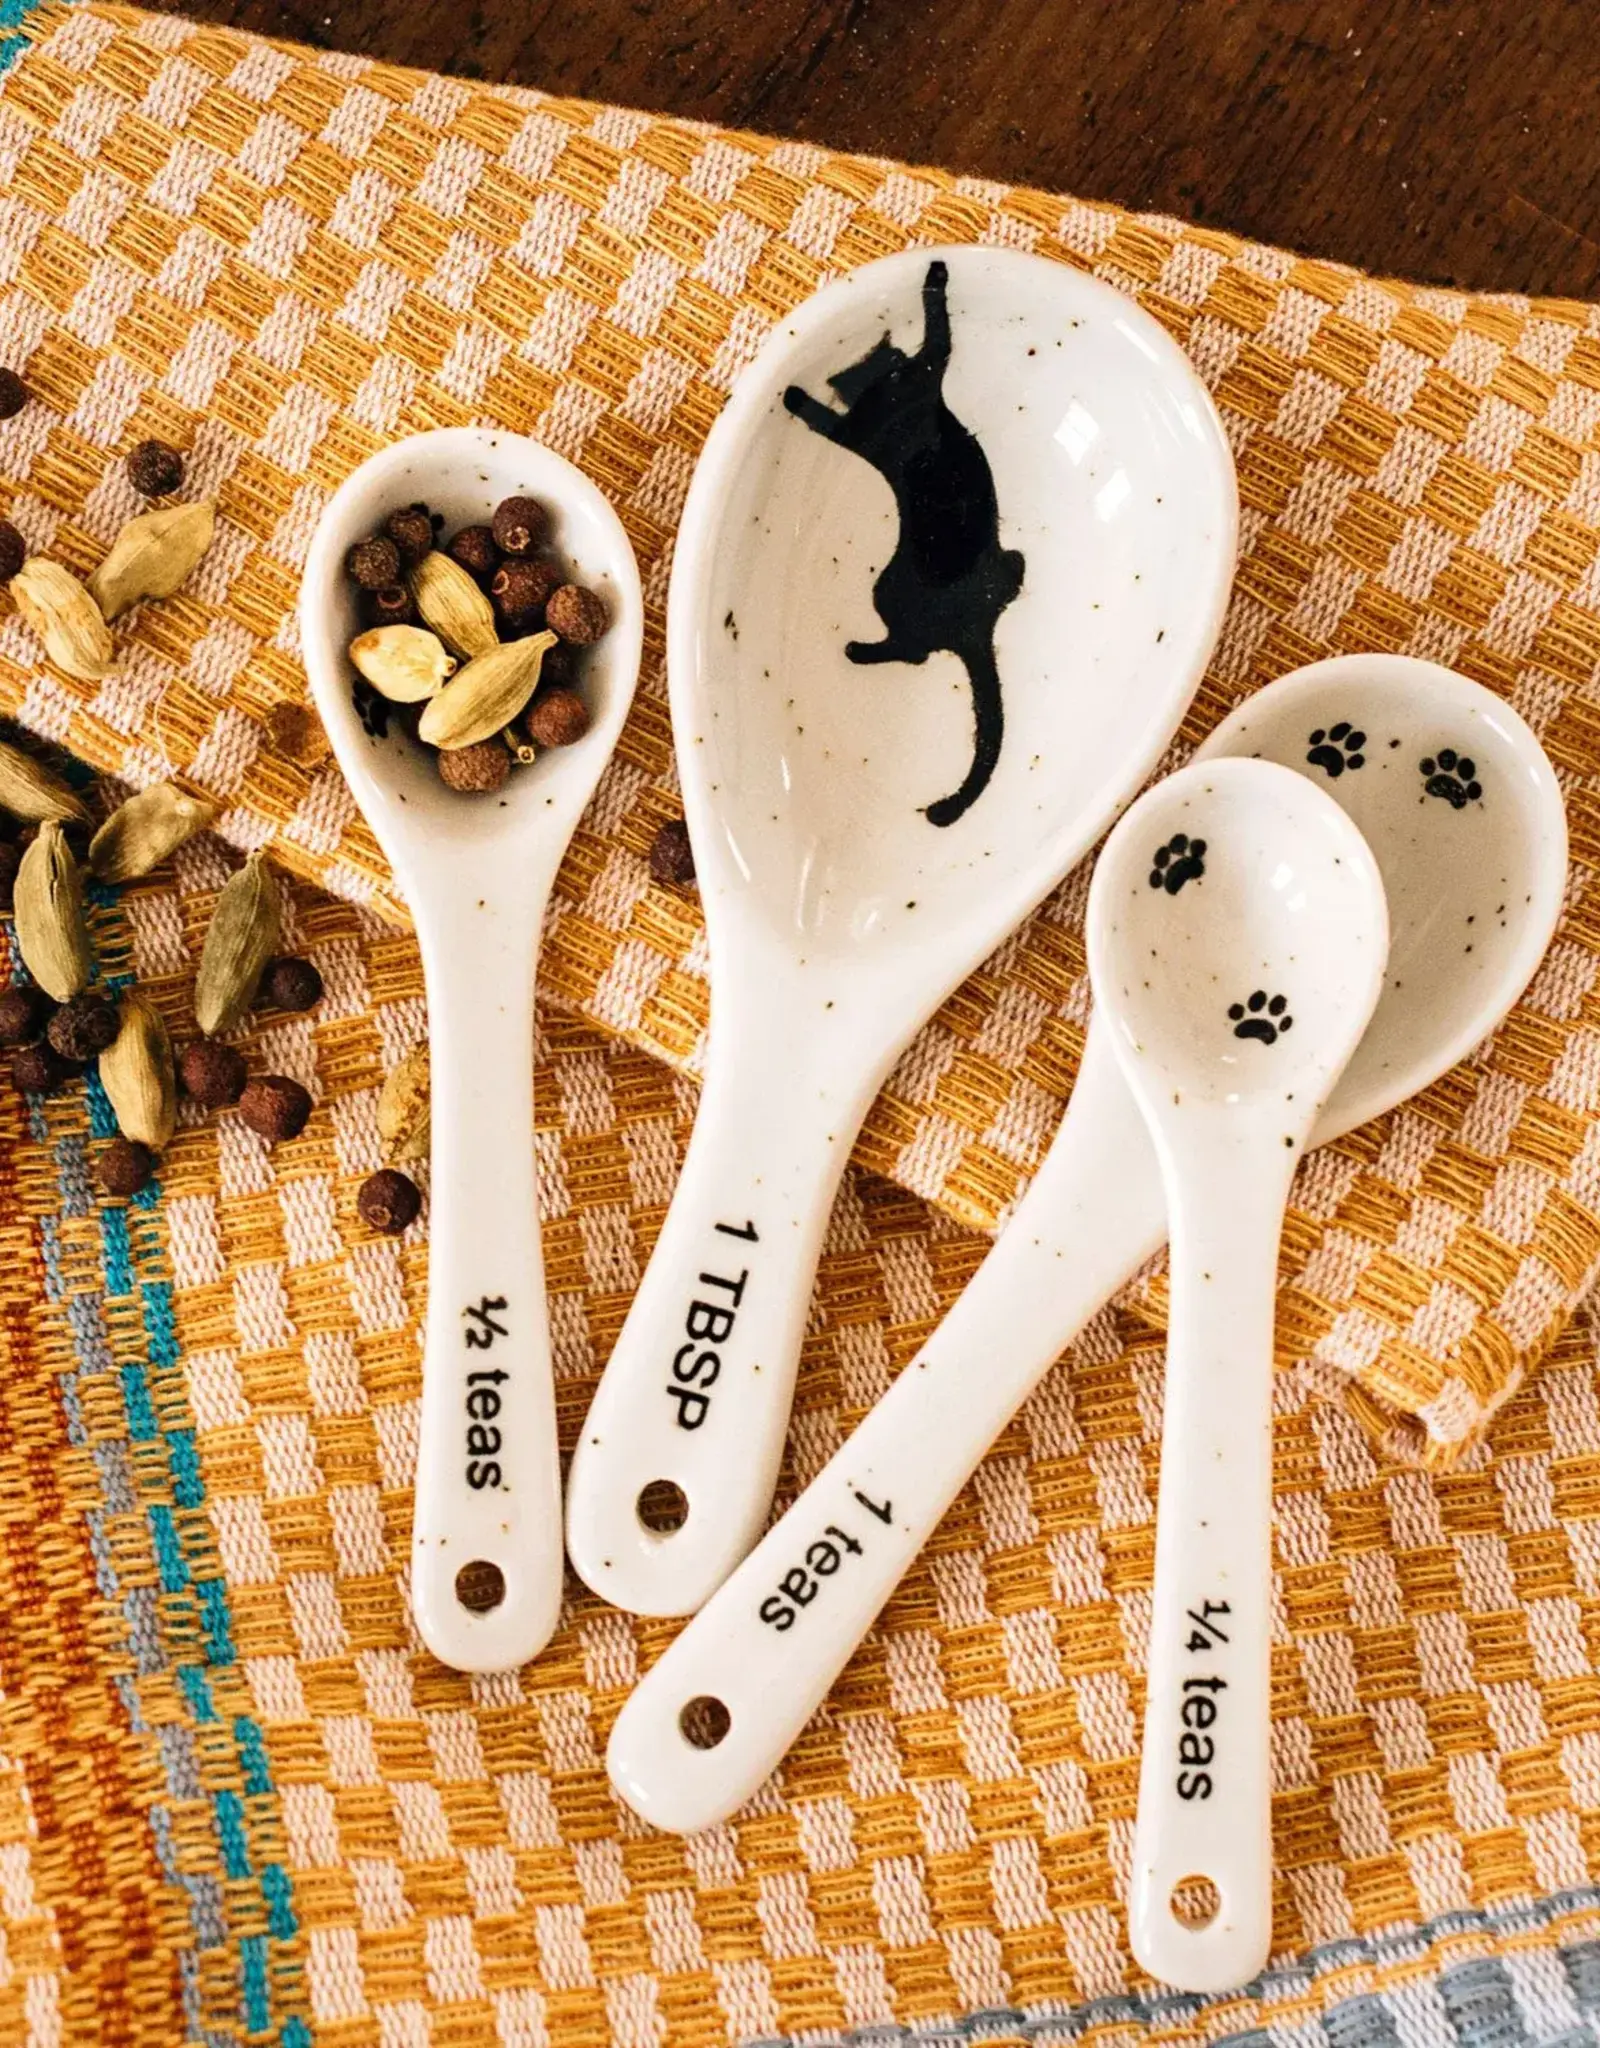 Vietnam Measuring Spoons Kitty Prints - Vietnam